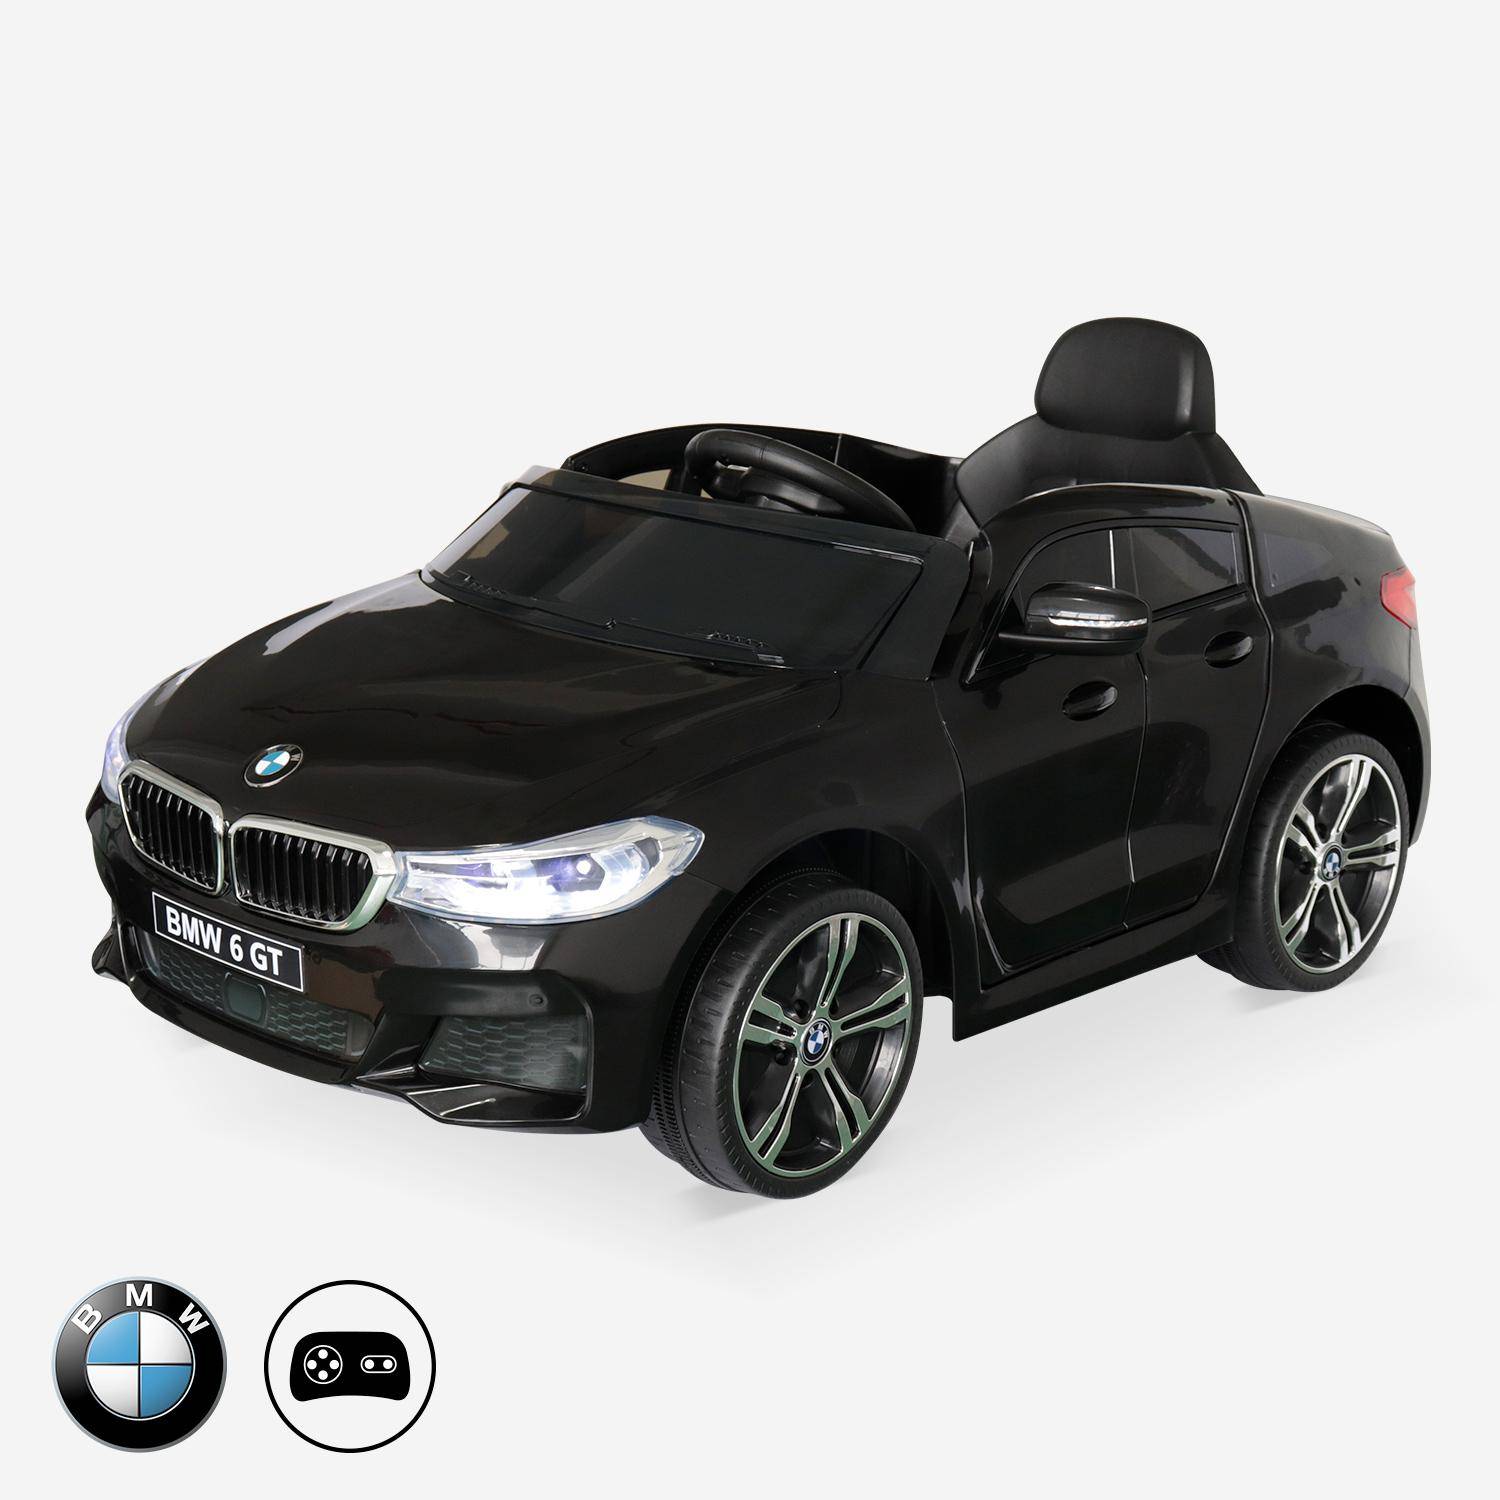 BMW GT6 Gran Turismo negro, coche eléctrico 12V, 1 plaza, descapotable para niños con autorradio y mando a distancia,sweeek,Photo1